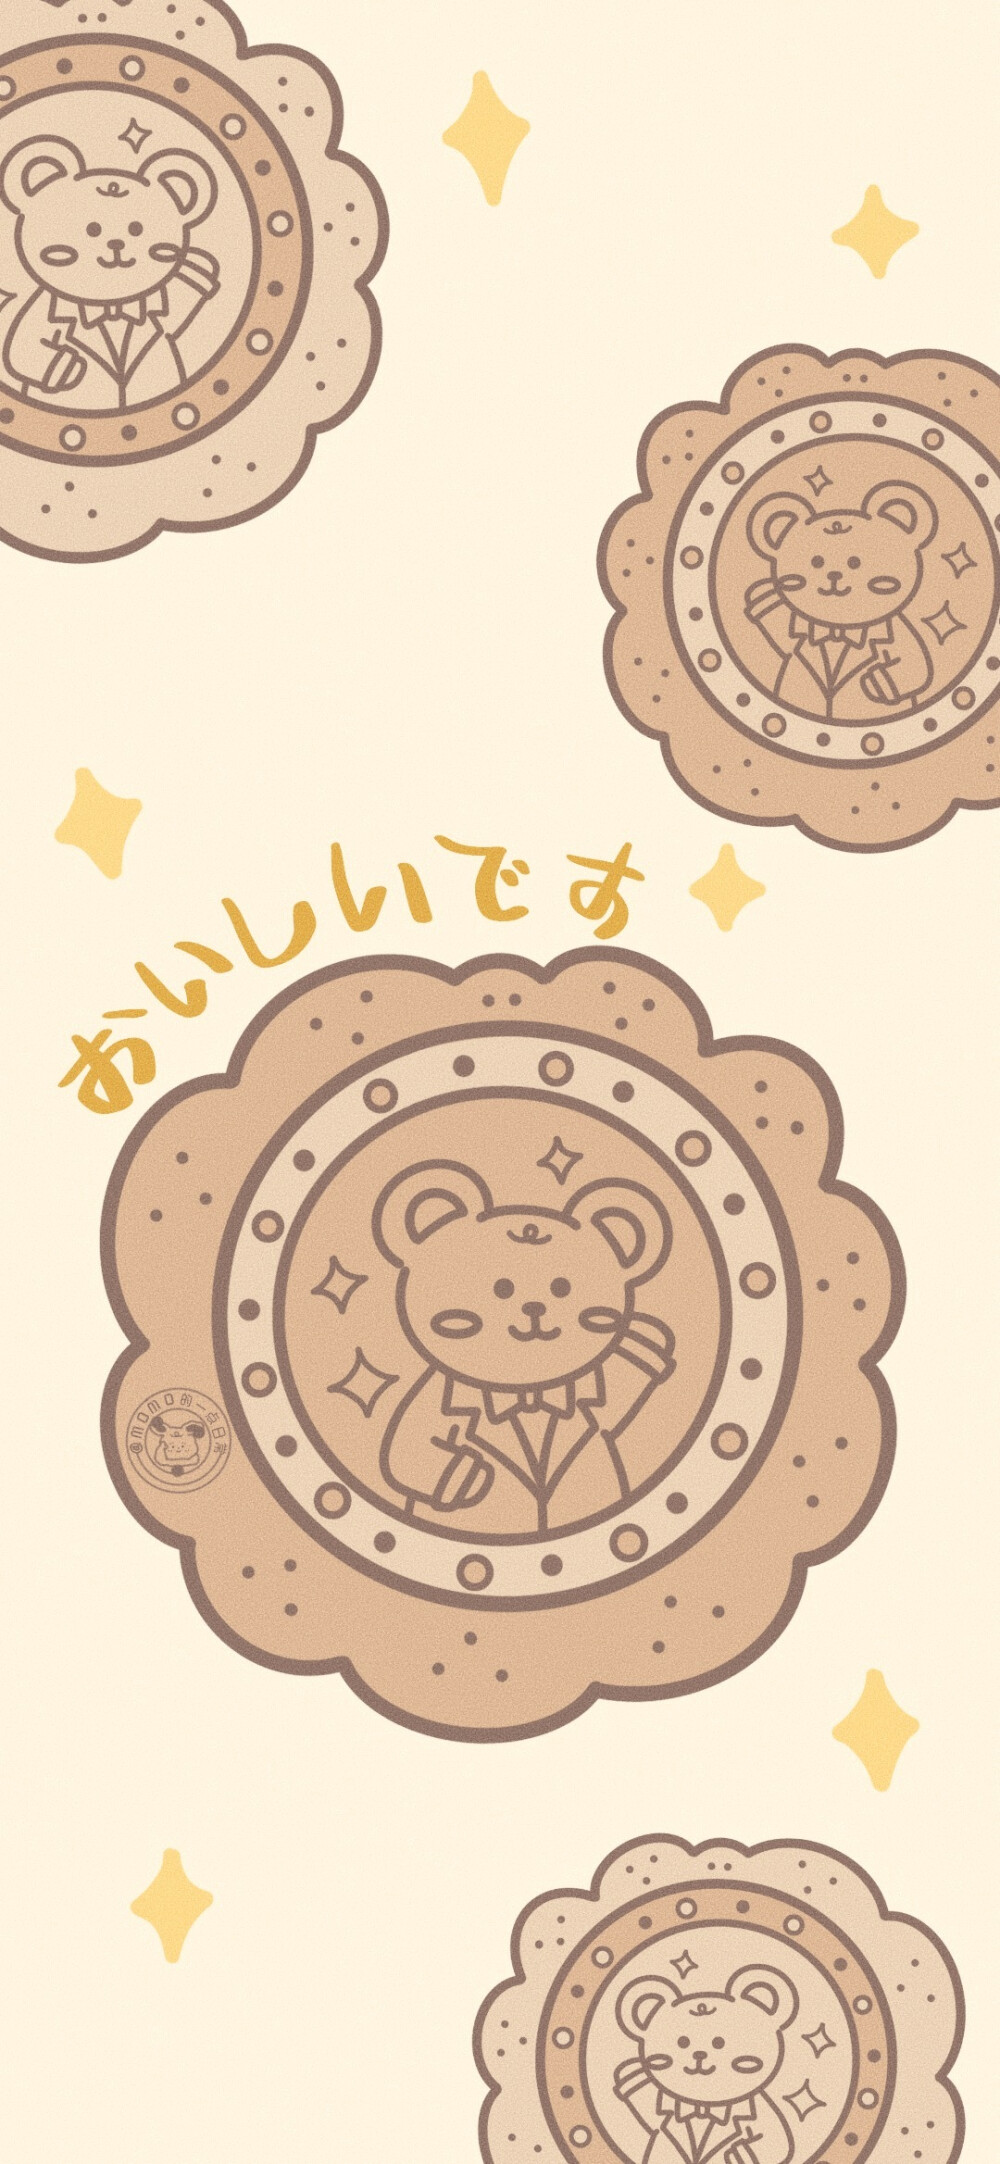 饼干熊壁纸图片